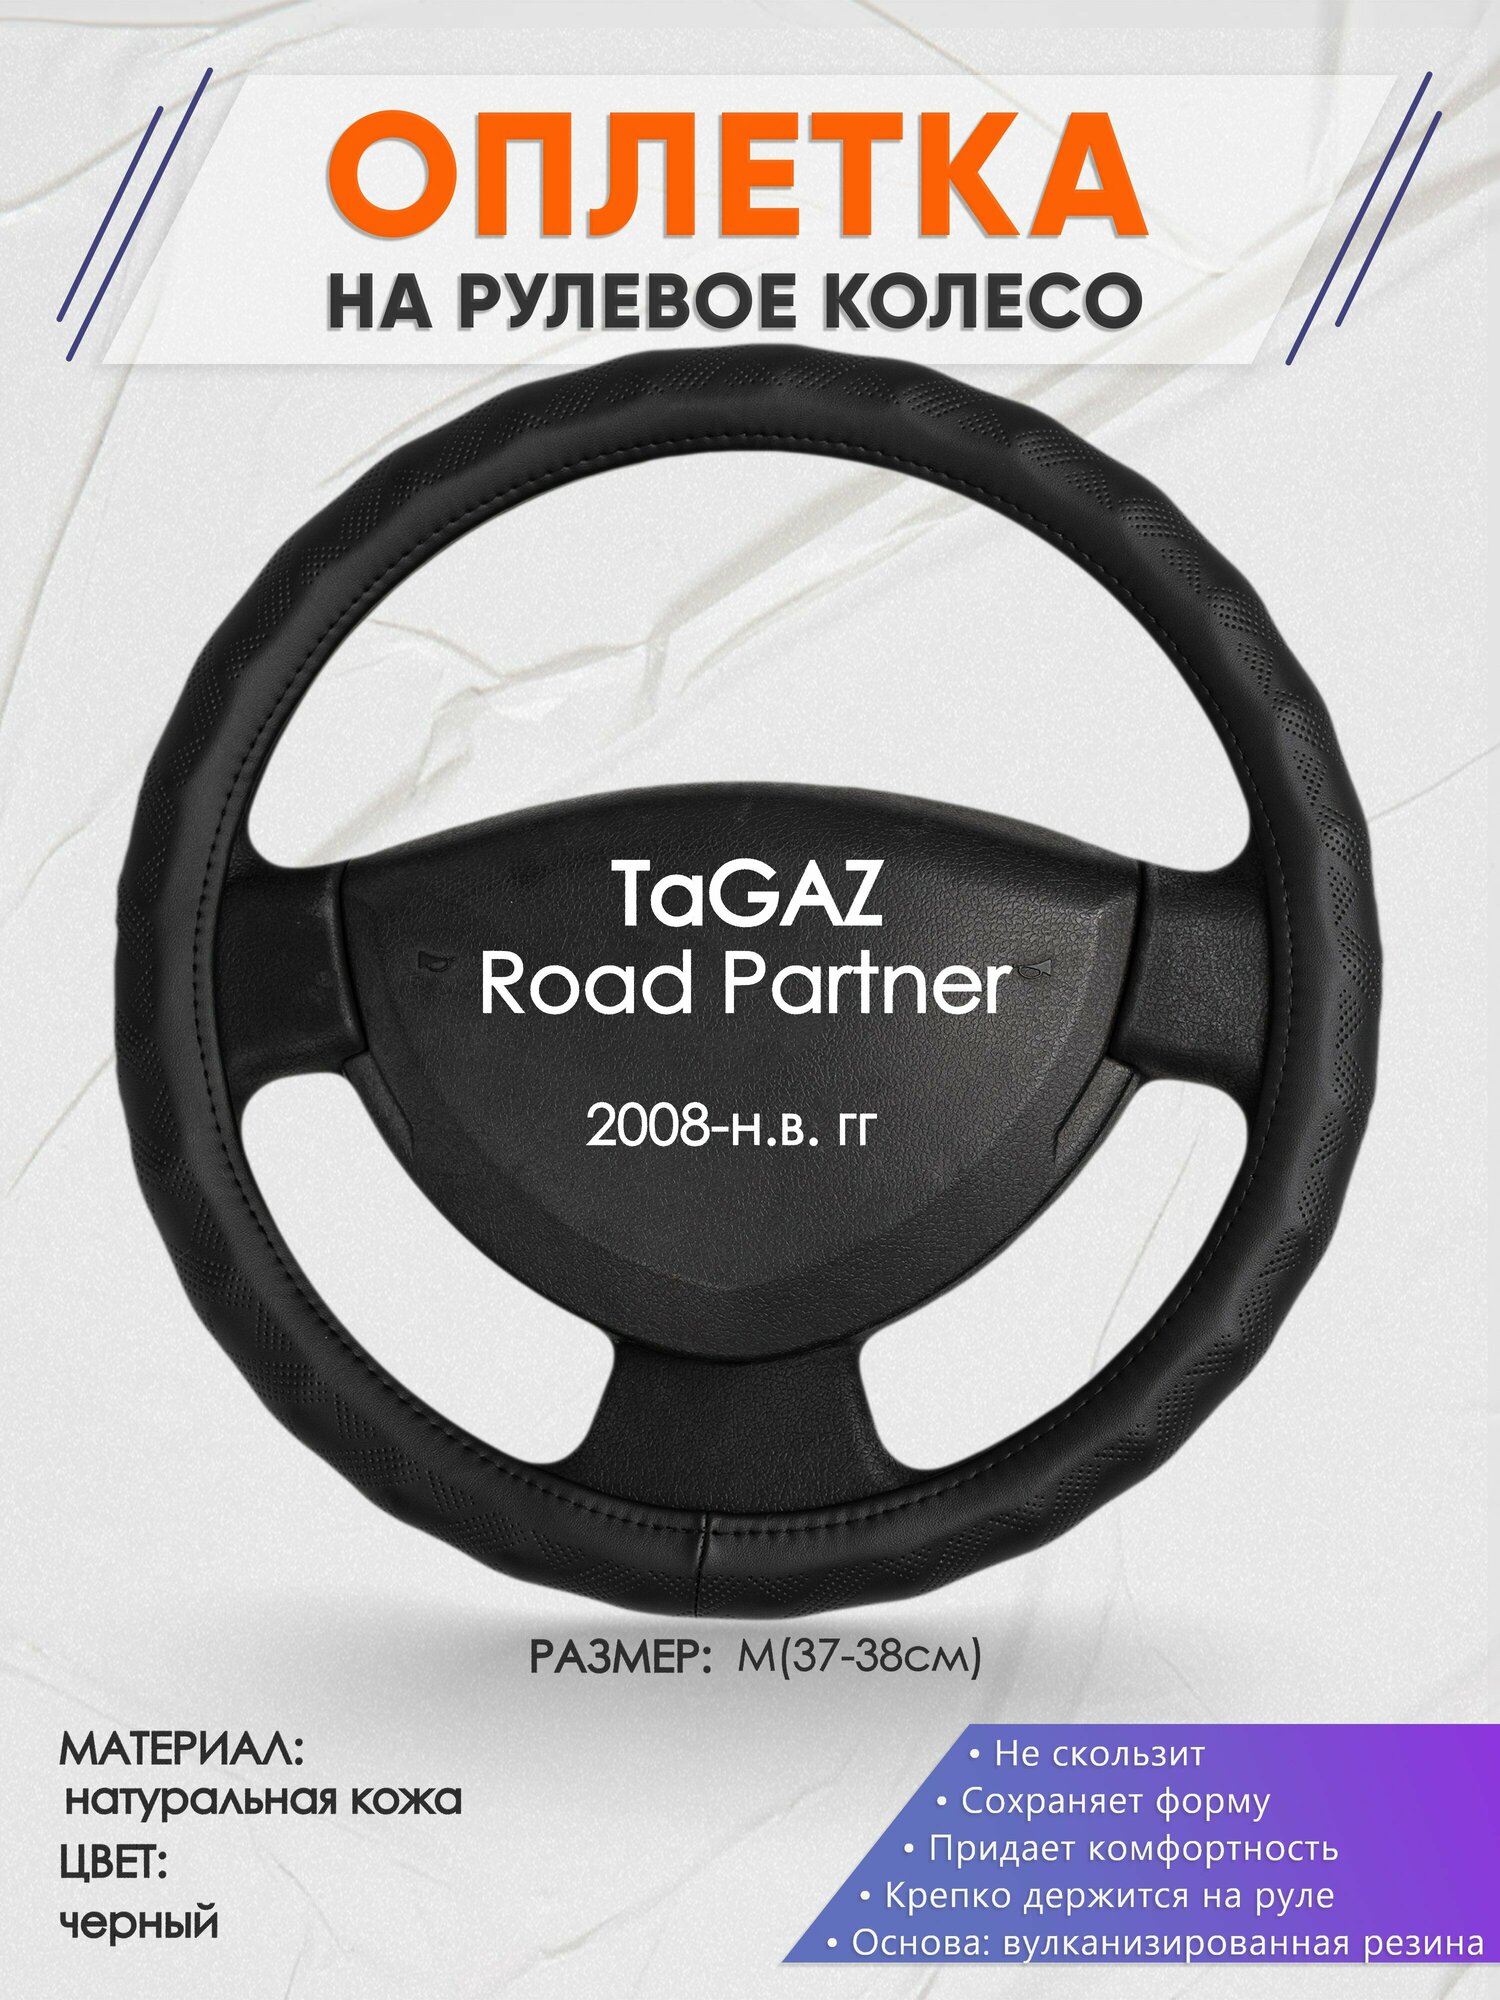 Оплетка на руль для TaGAZ Road Partner(тагаз Роуд Партнер) 2008-н. в, M(37-38см), Натуральная кожа 26